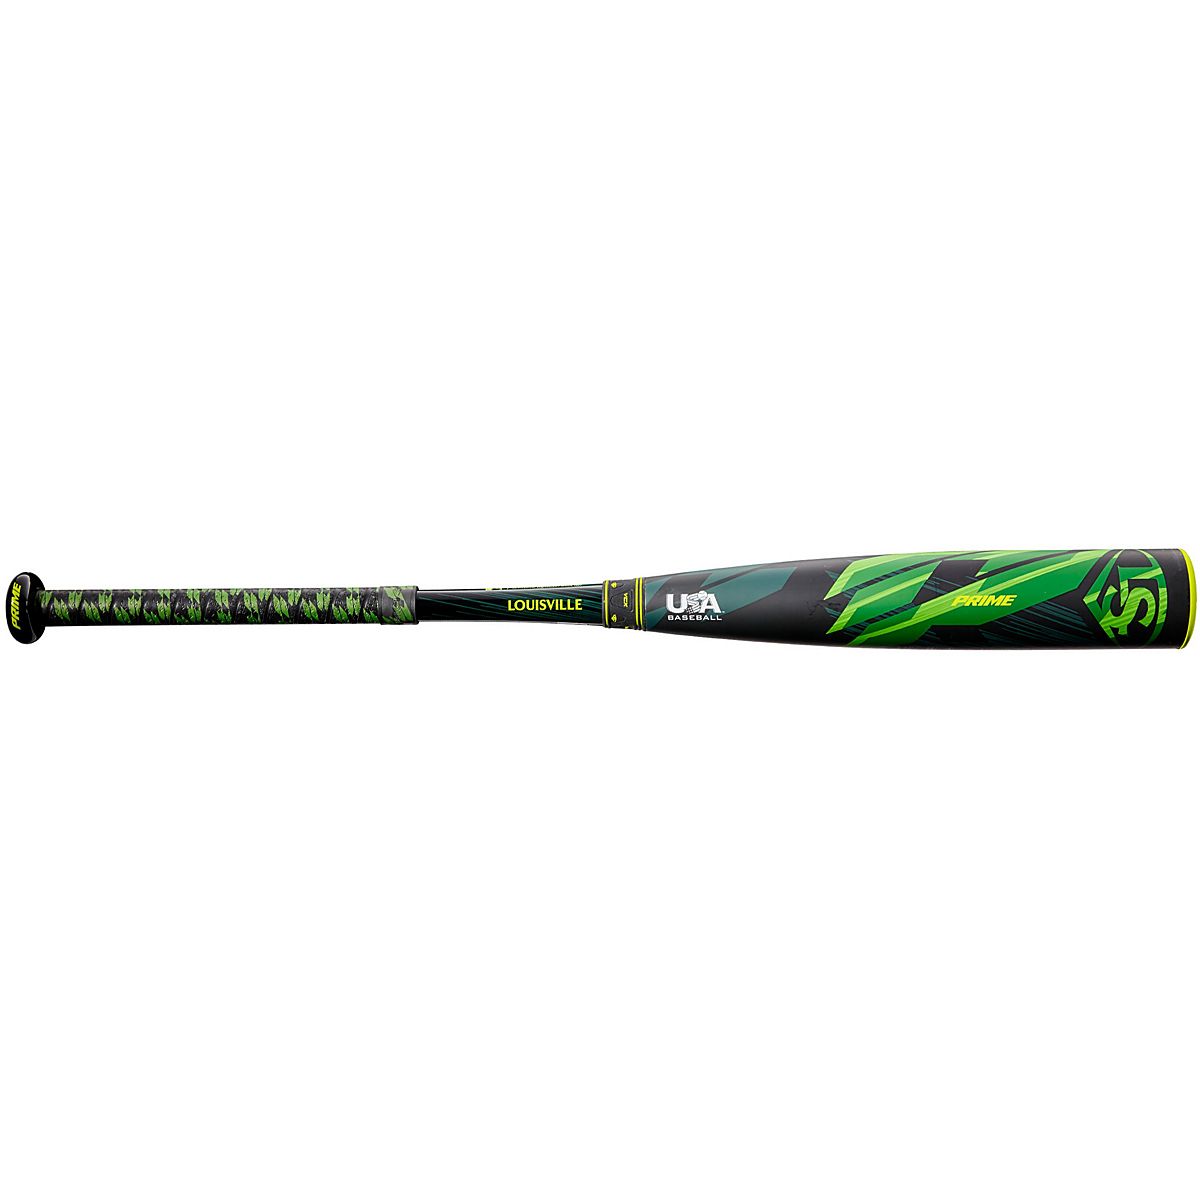 CUBS Louisville Slugger Little League bat - Baseball & Softball Bats, Facebook Marketplace